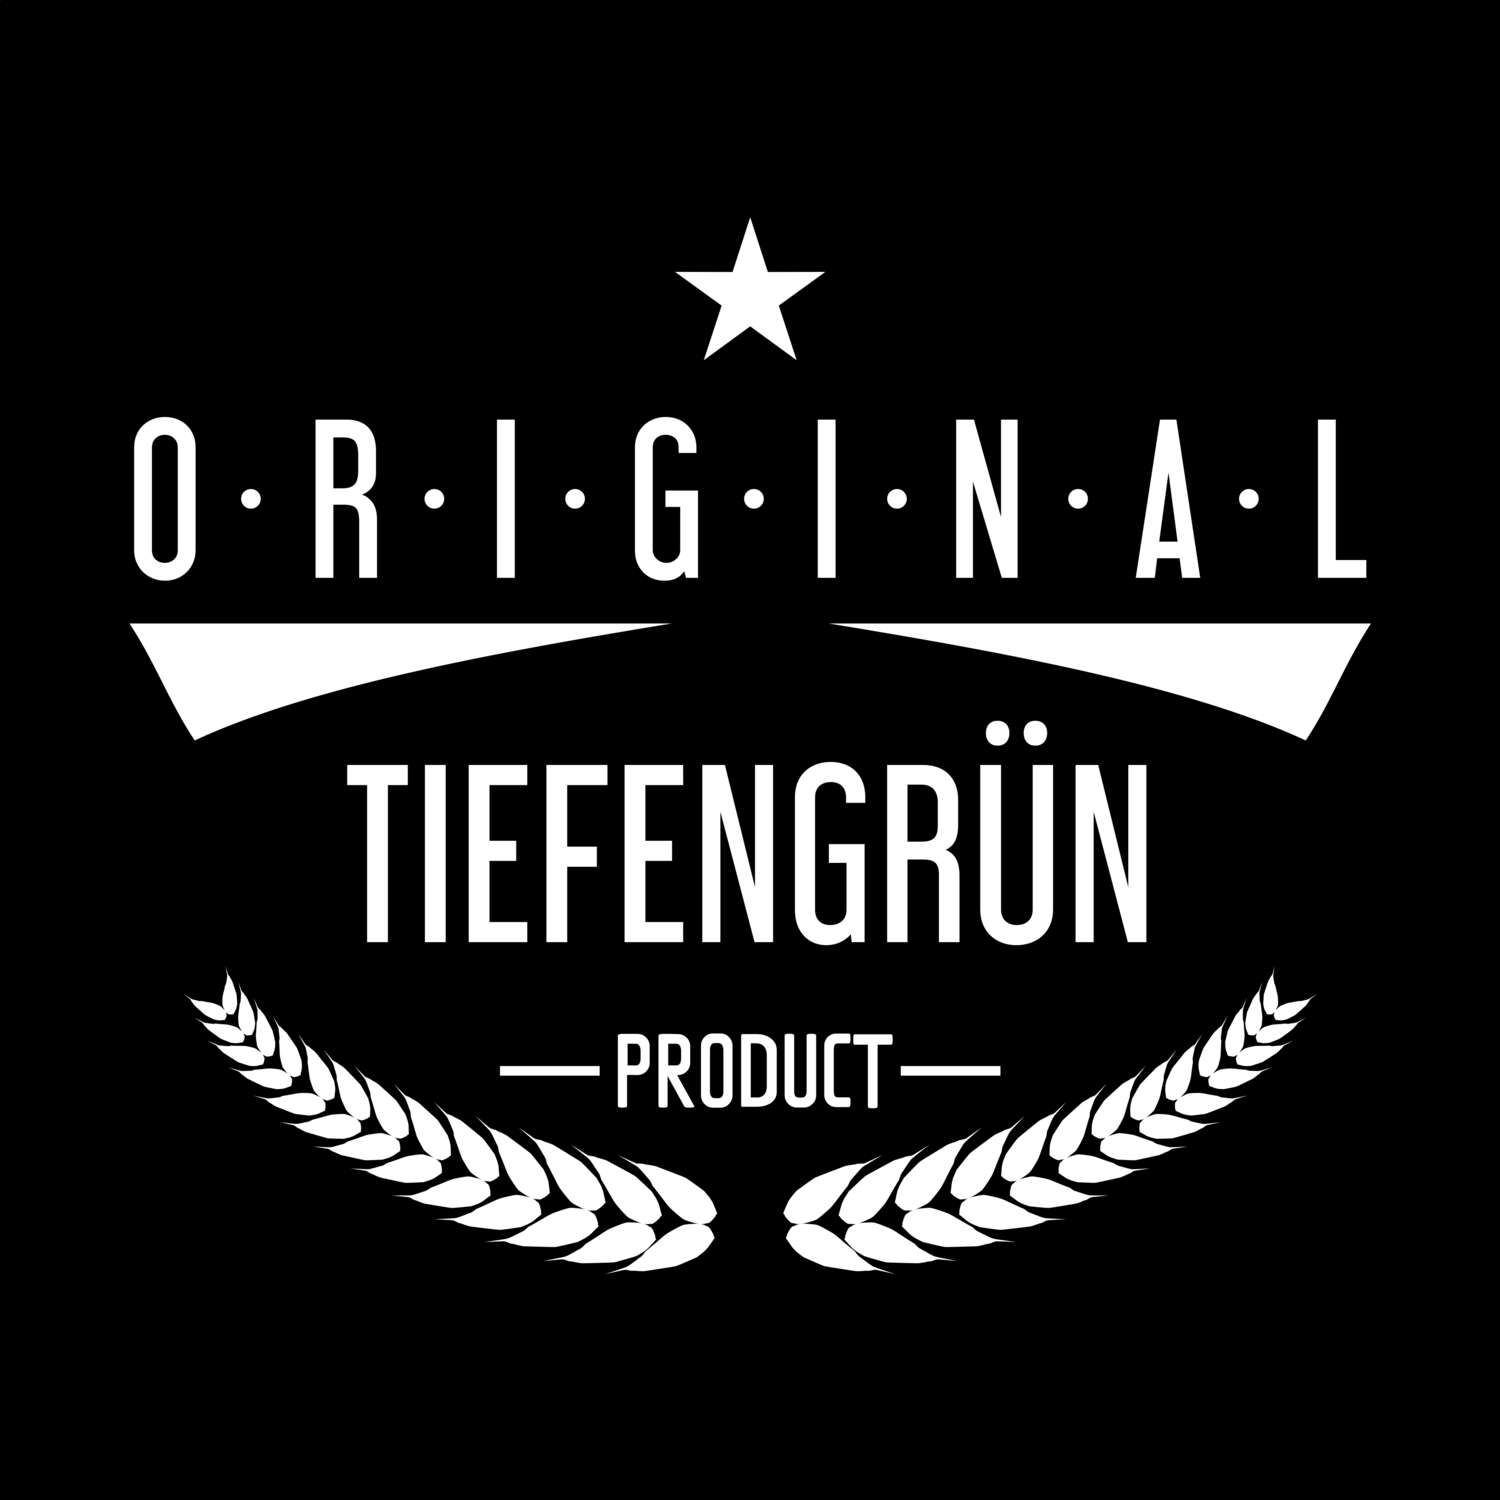 Tiefengrün T-Shirt »Original Product«